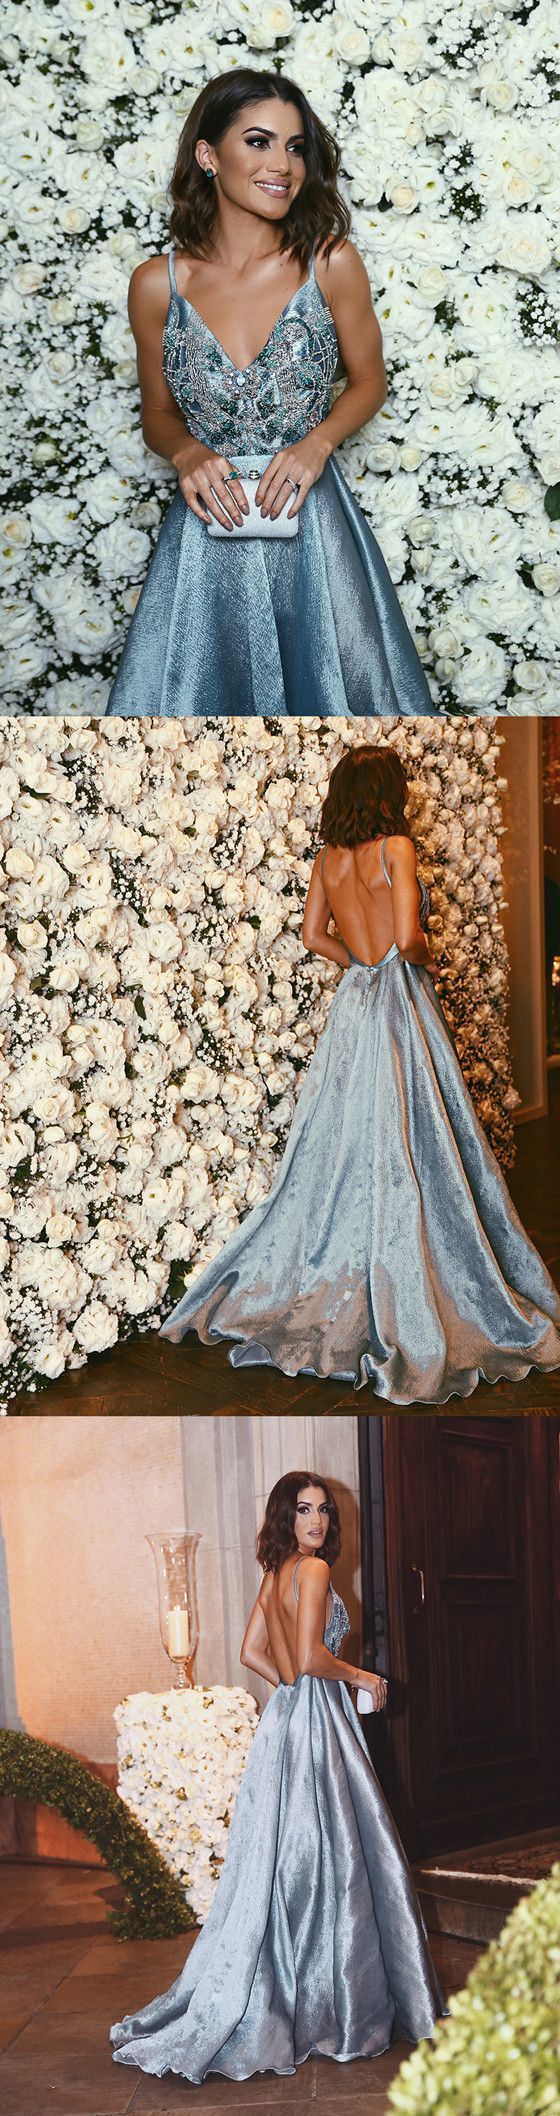 Luxurious A-line Straps Blue Formal Evening Dress,Sexy Backless Beaded Deep V Neckline prom dresses cg614